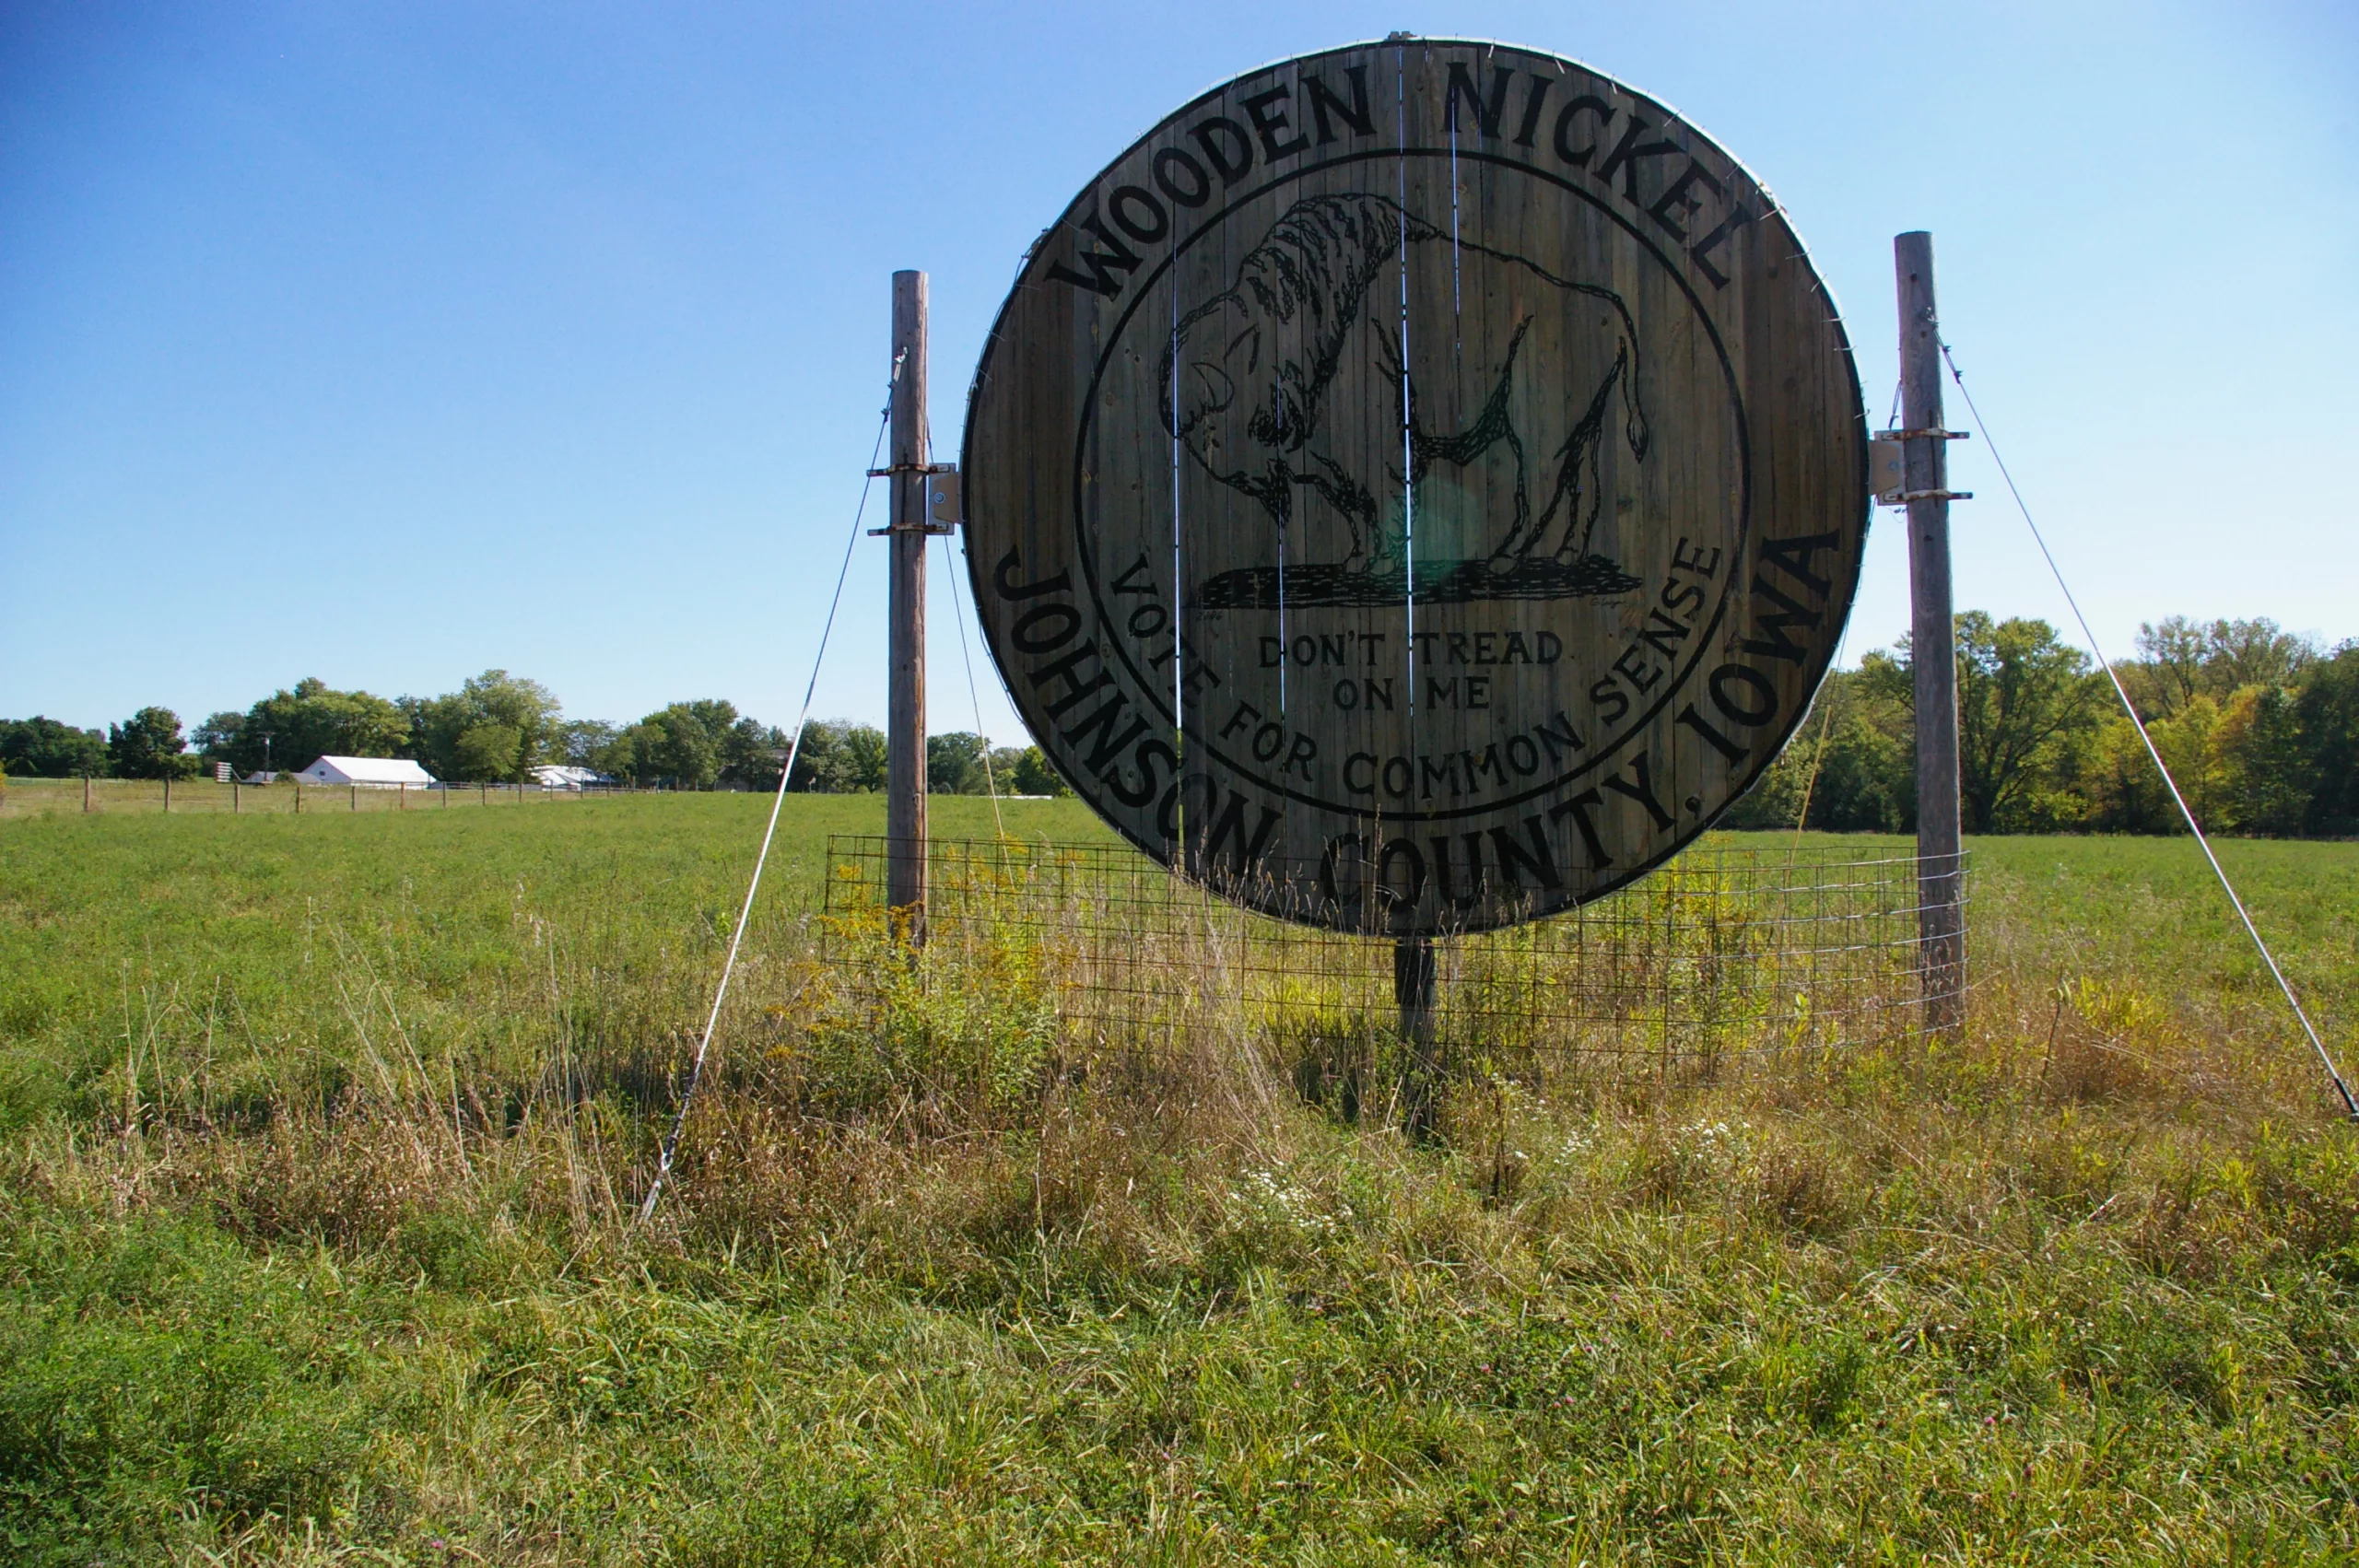 World's Largest Wooden Nickel in a field in Iowa City, Iowa